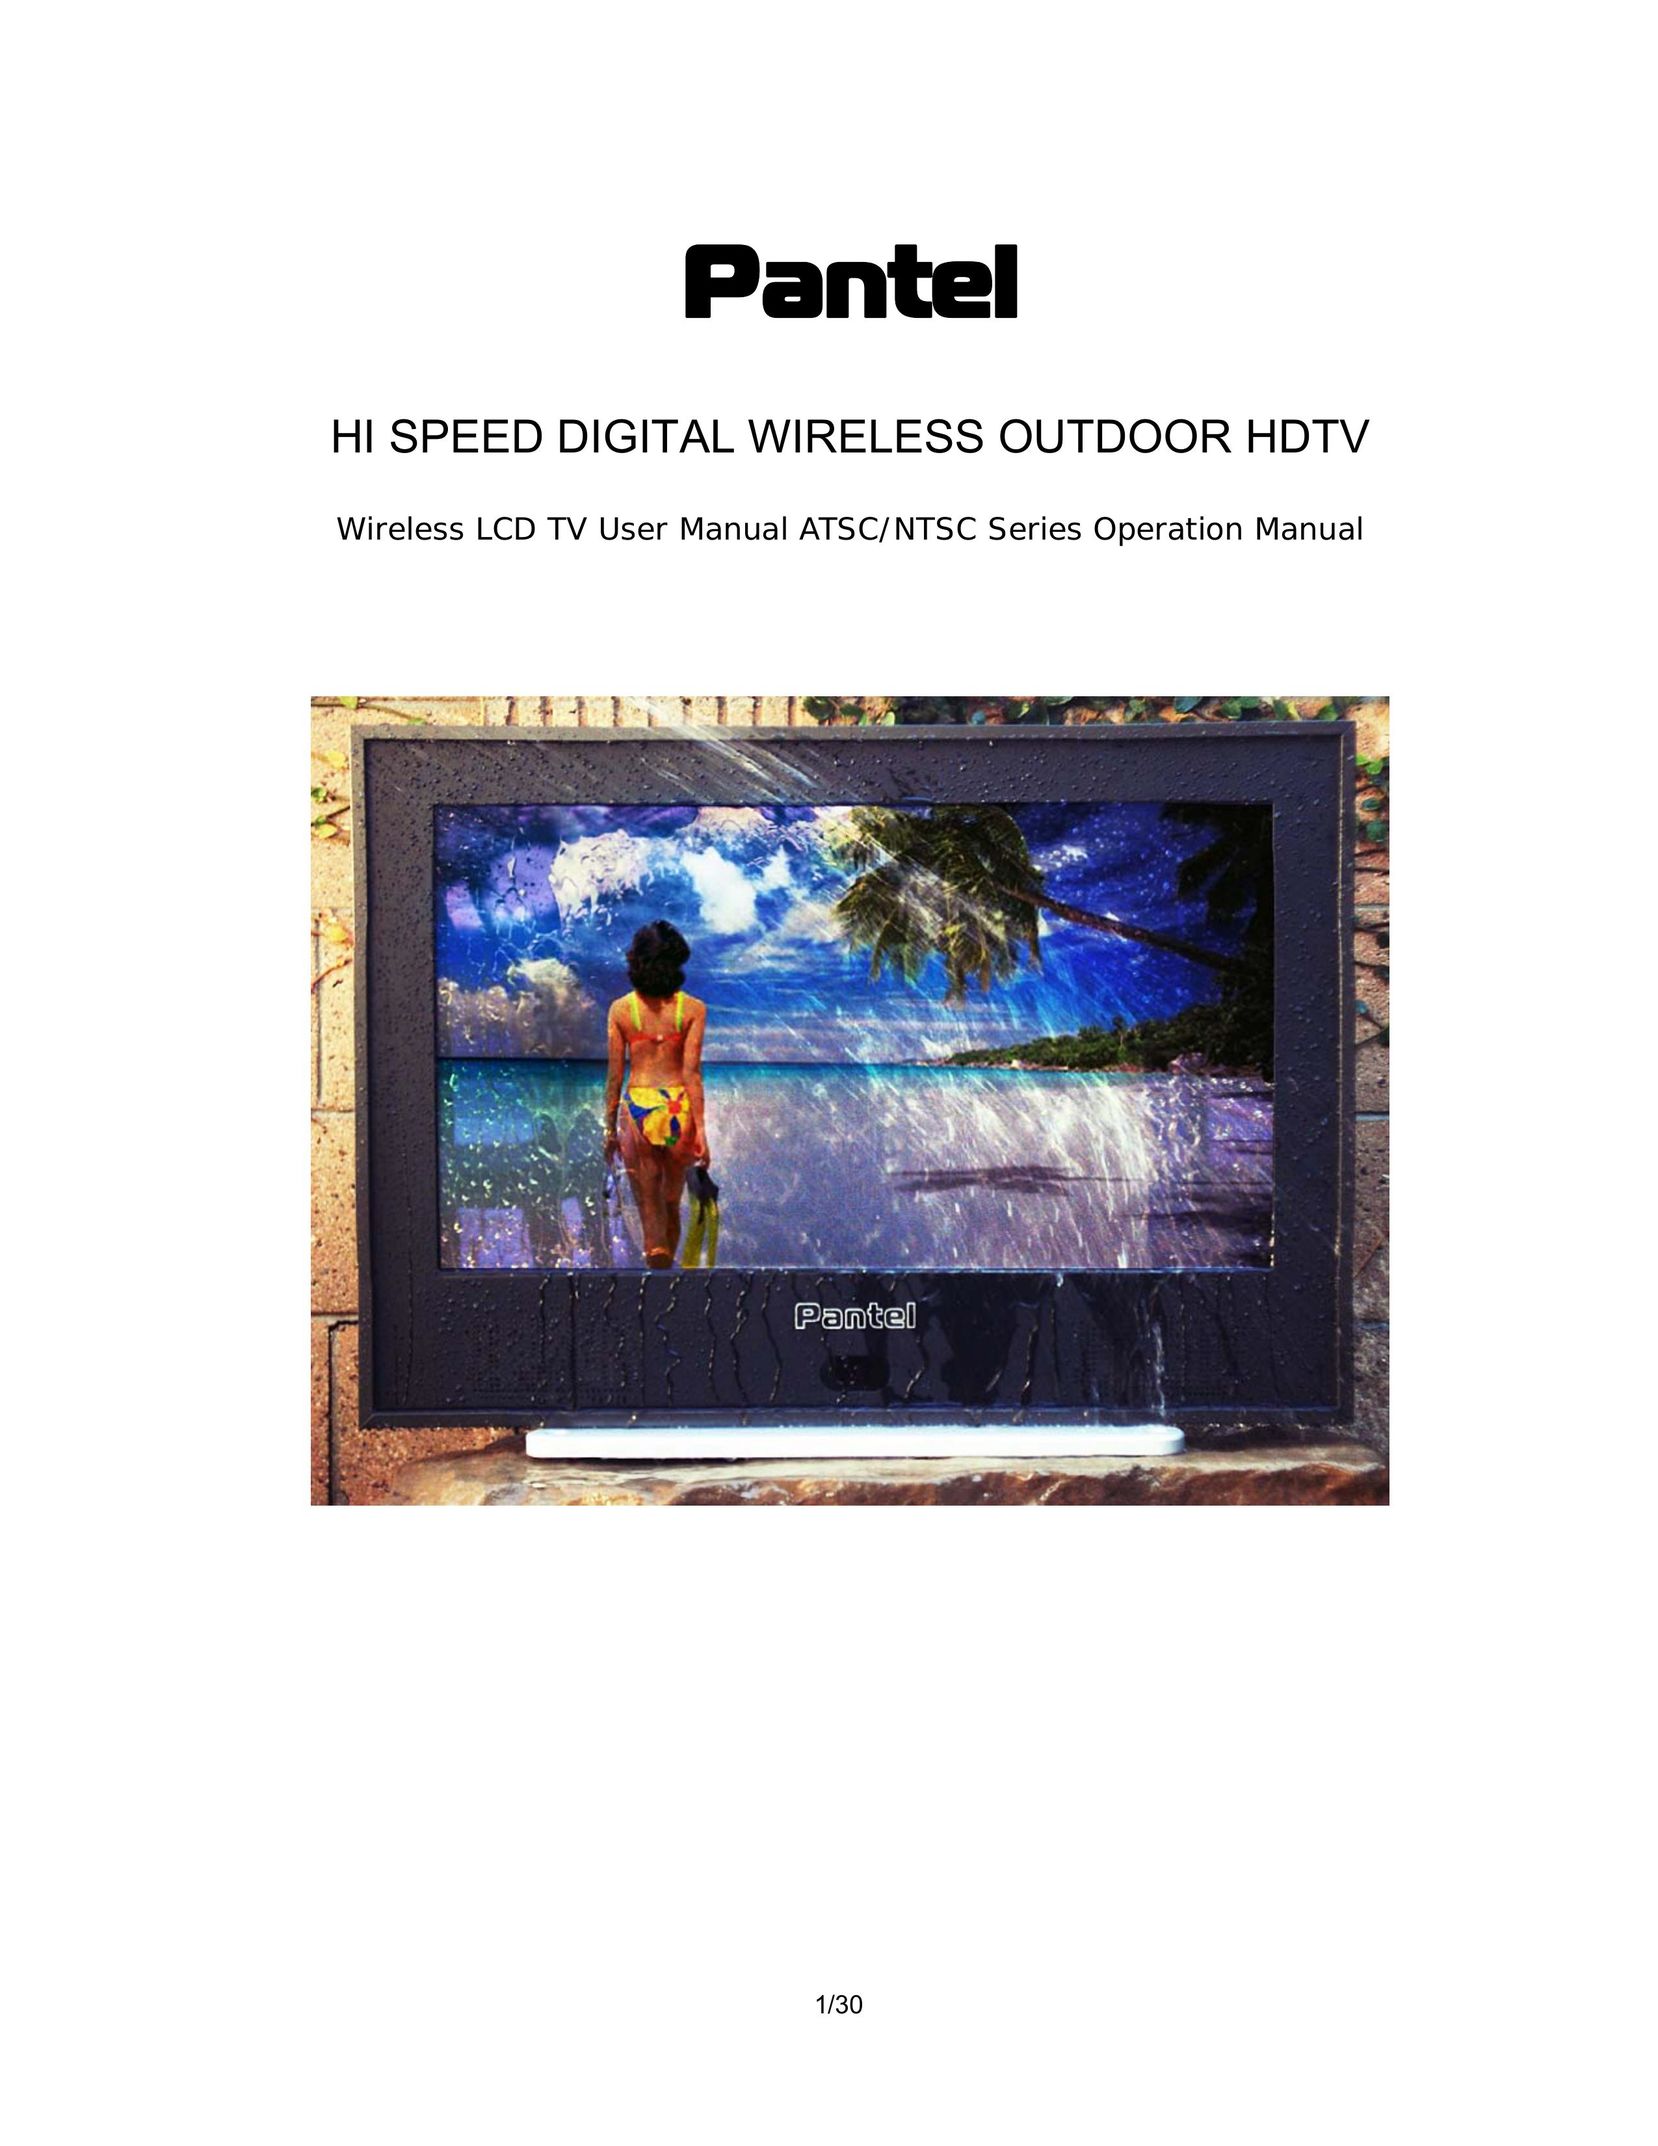 Pantel PAN520 Flat Panel Television User Manual